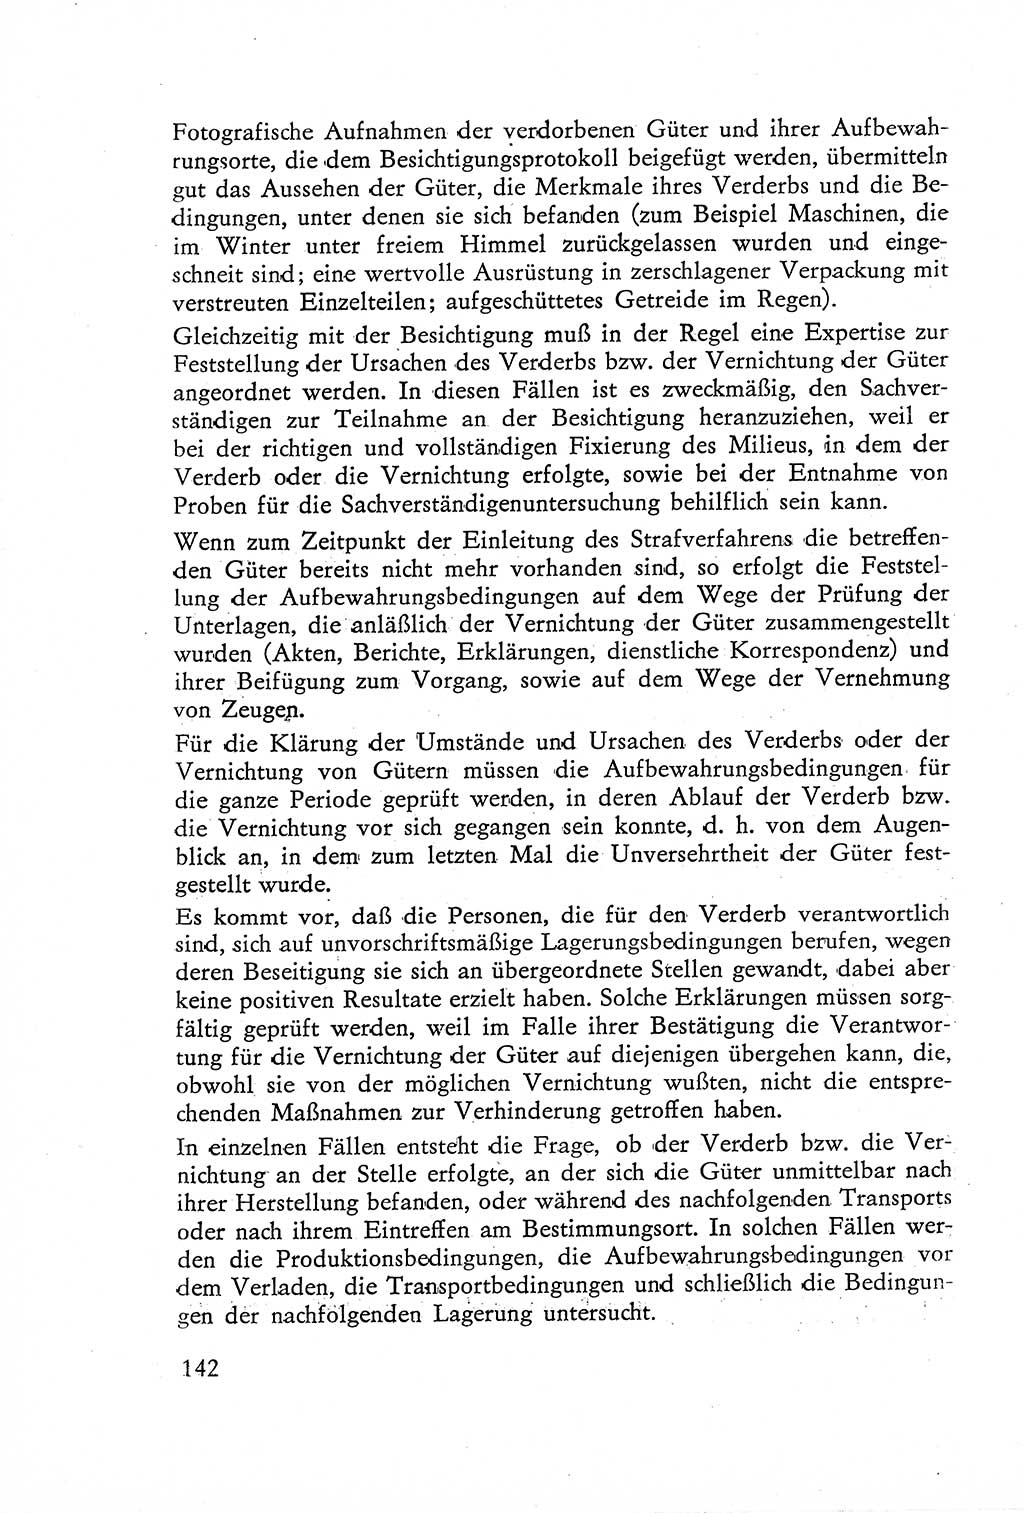 Die Untersuchung einzelner Verbrechensarten [Deutsche Demokratische Republik (DDR)] 1960, Seite 142 (Unters. Verbr.-Art. DDR 1960, S. 142)